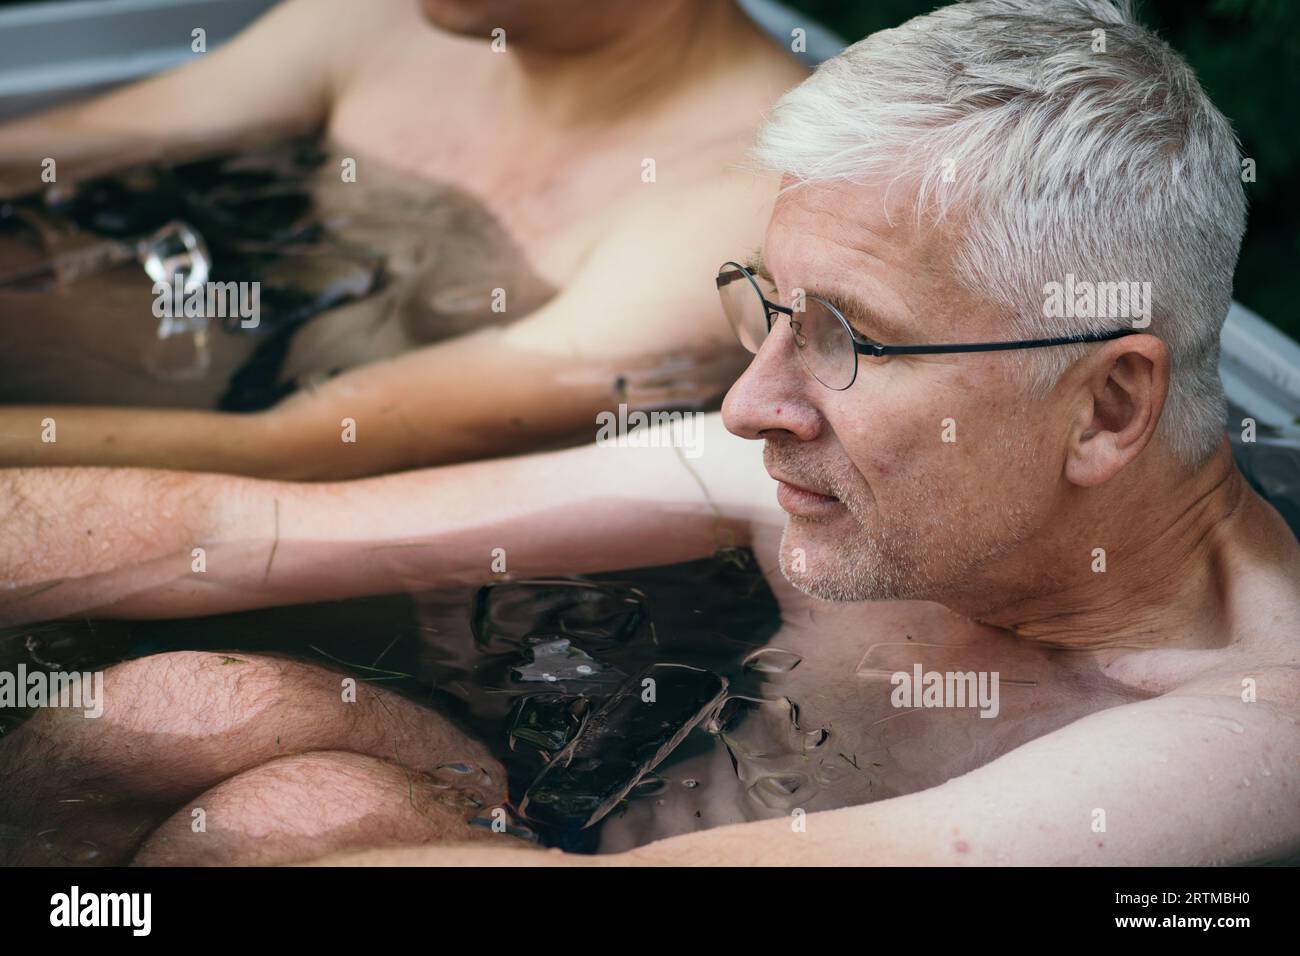 Homme adulte baignant de glace dans l'eau froide parmi les glaçons. Méthode Wim Hof, thérapie par le froid, techniques de respiration, yoga et méditation Banque D'Images